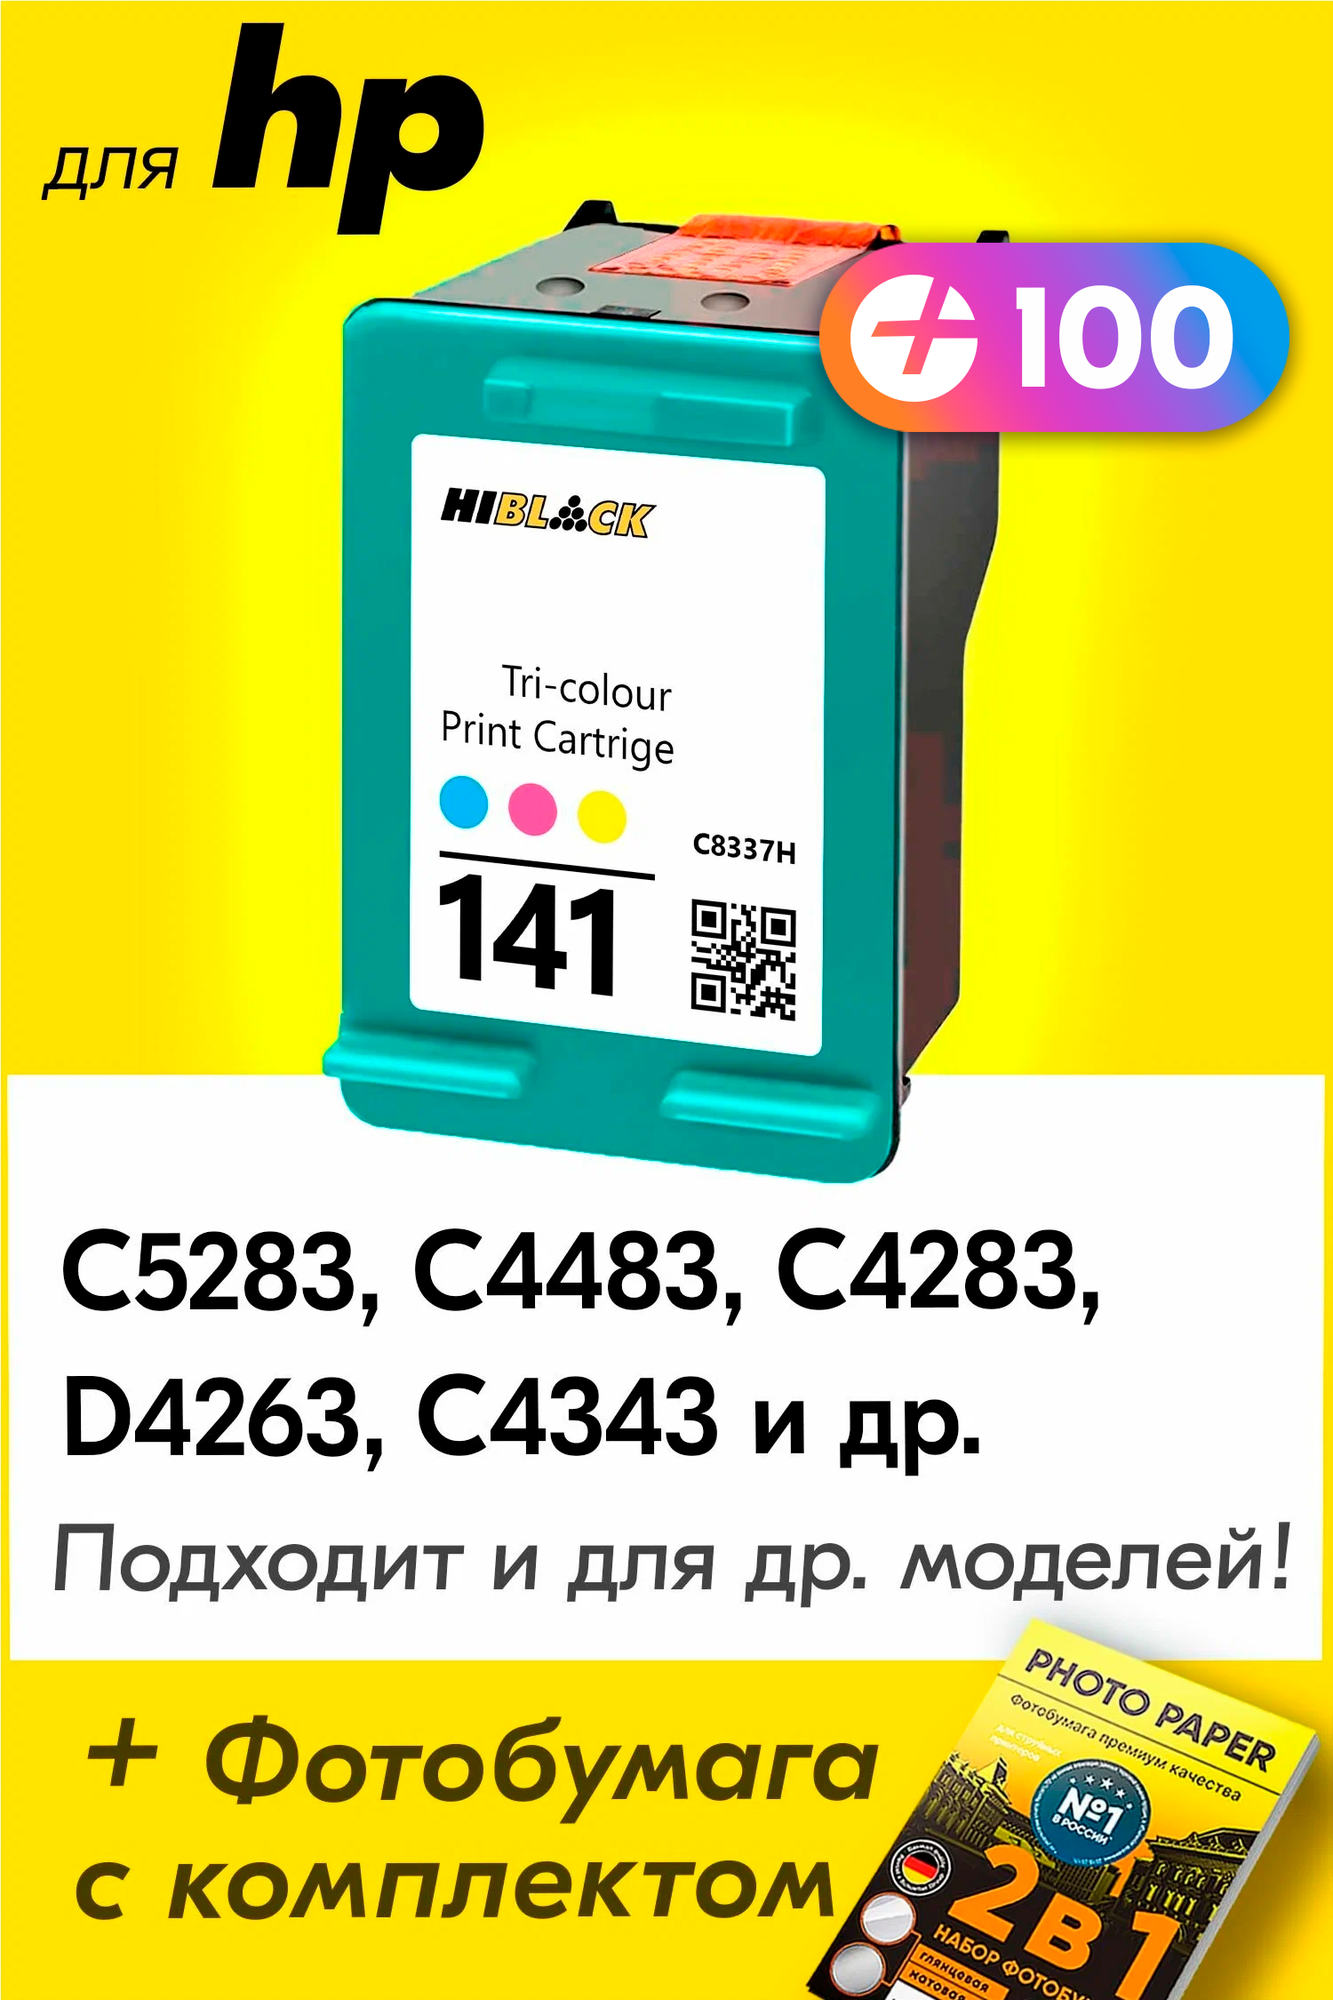 Картридж для HP 141XL, HP Photosmart C5283, C4483, C4283, C4343, DeskJet D4263 и др. с чернилами для струйного принтера, Цветной (Color), 1 шт.